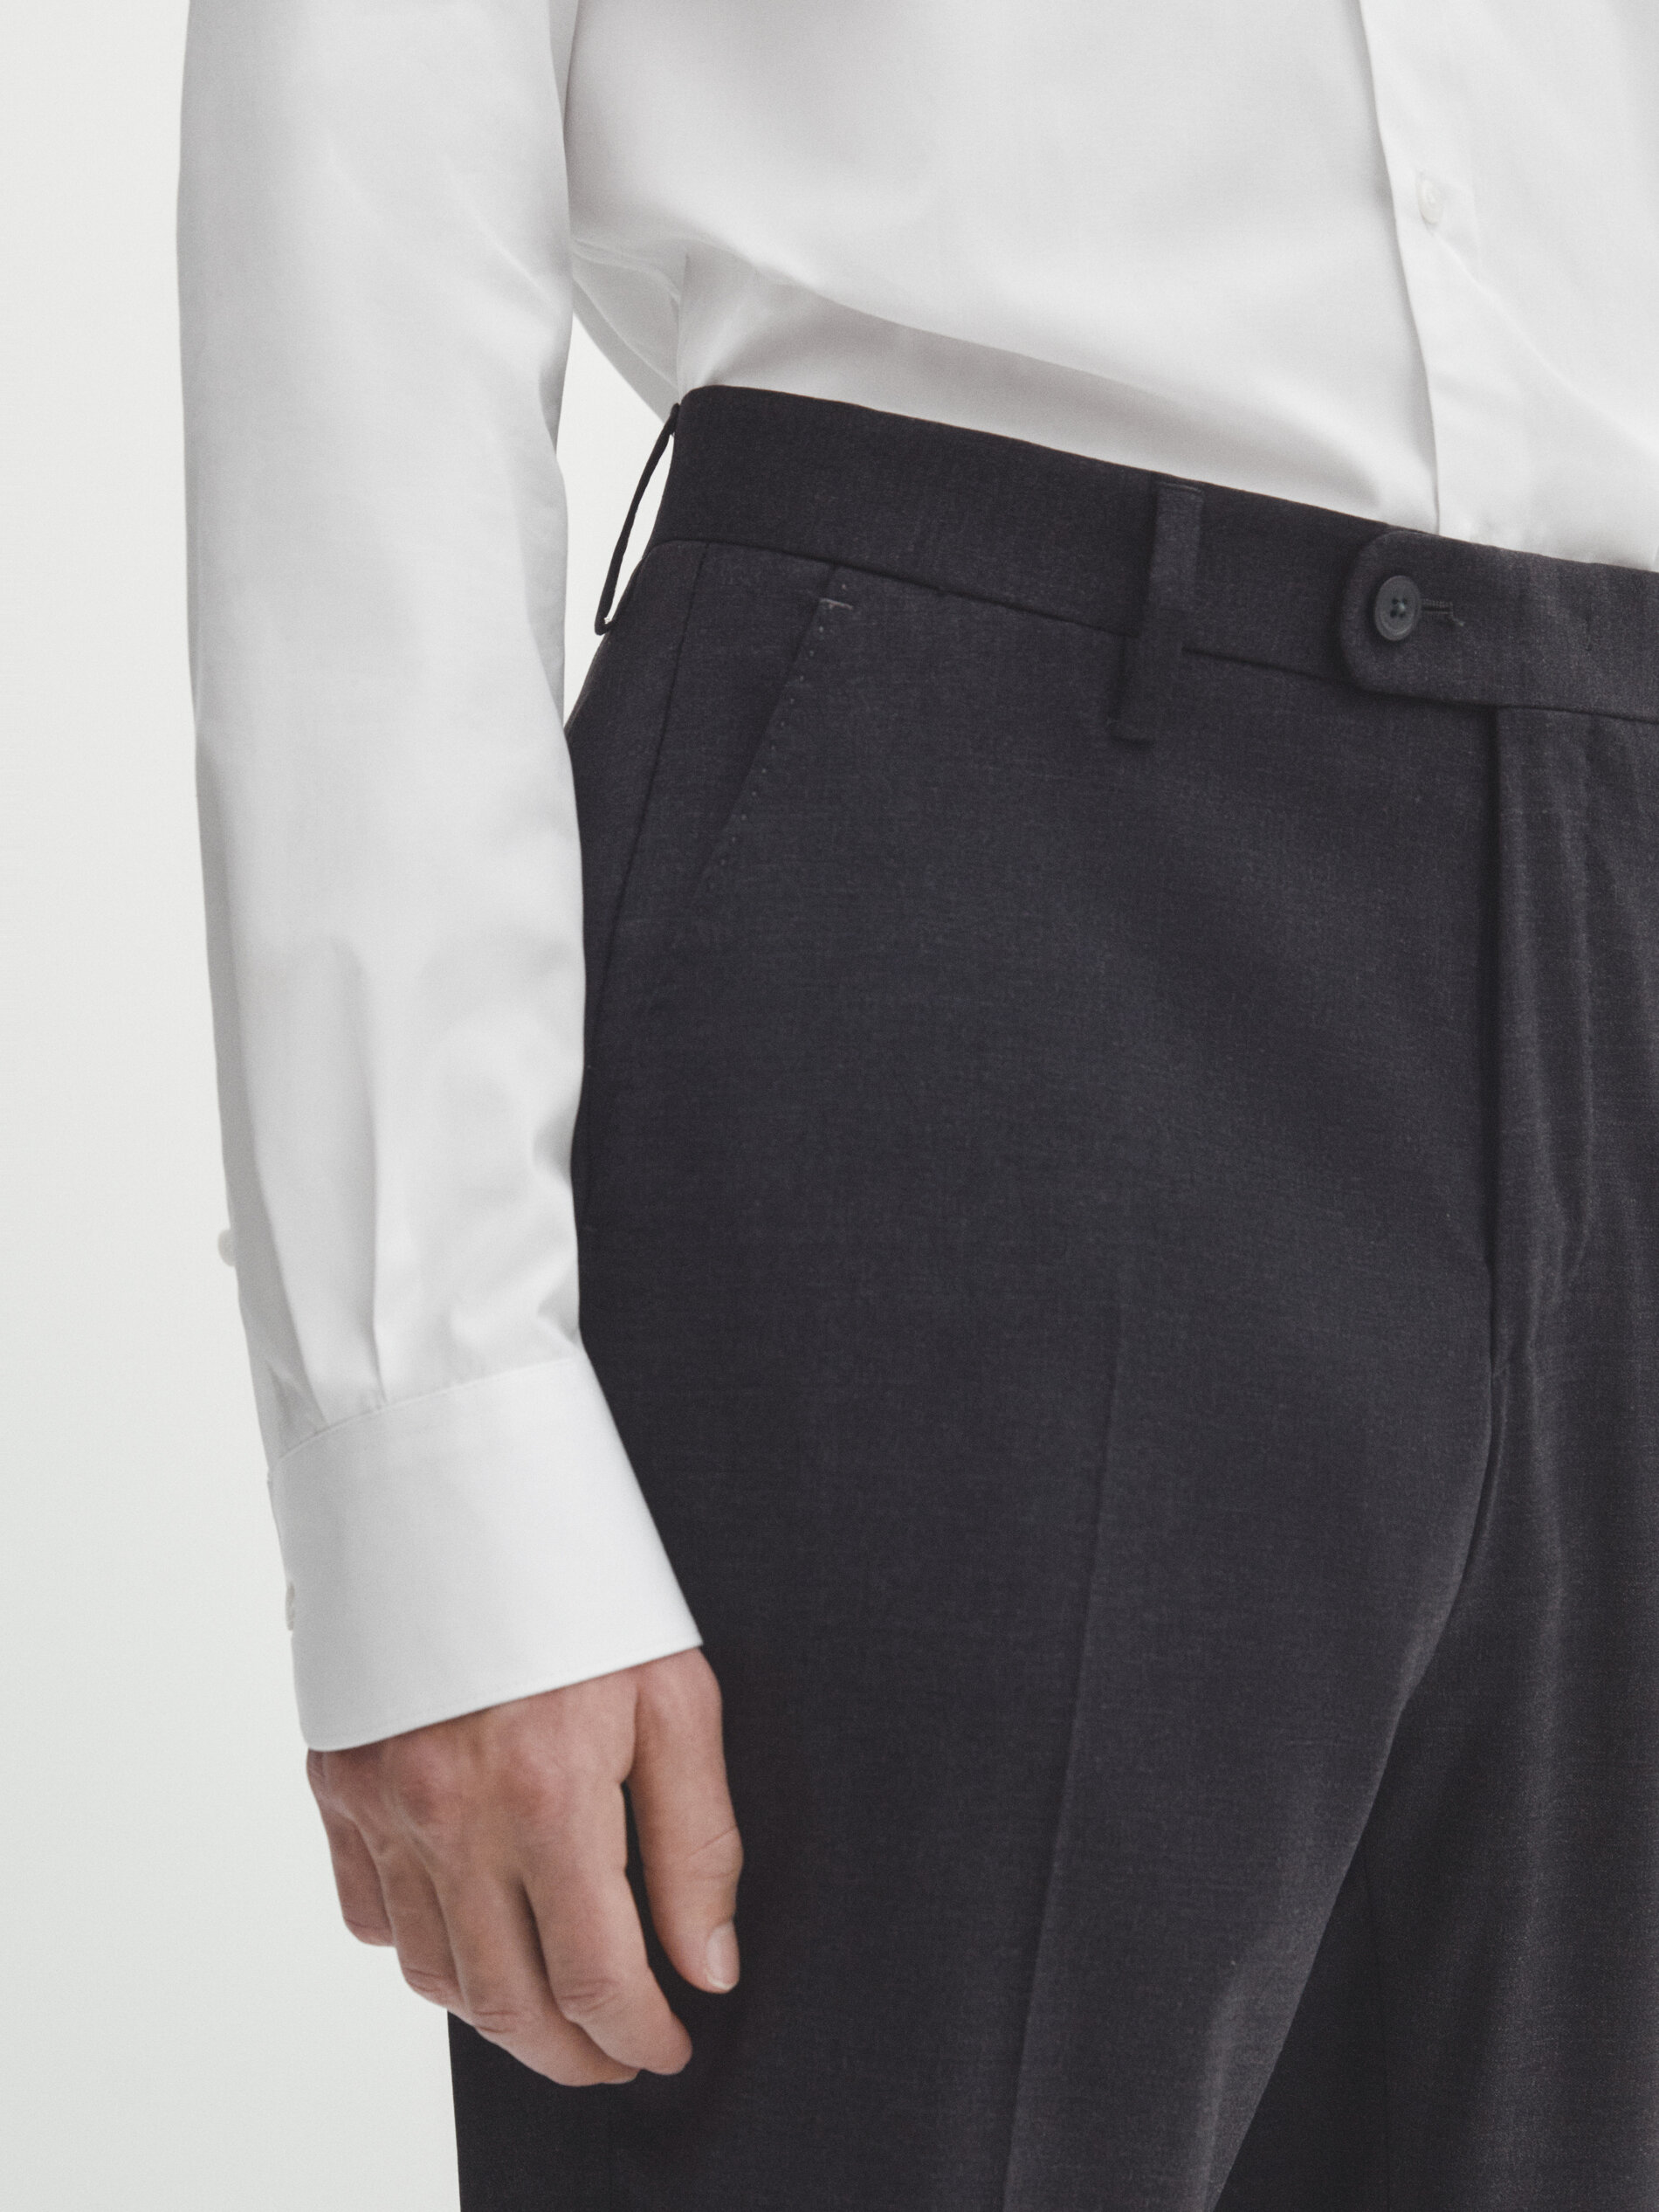 Pantalón traje liso gris mezcla lana